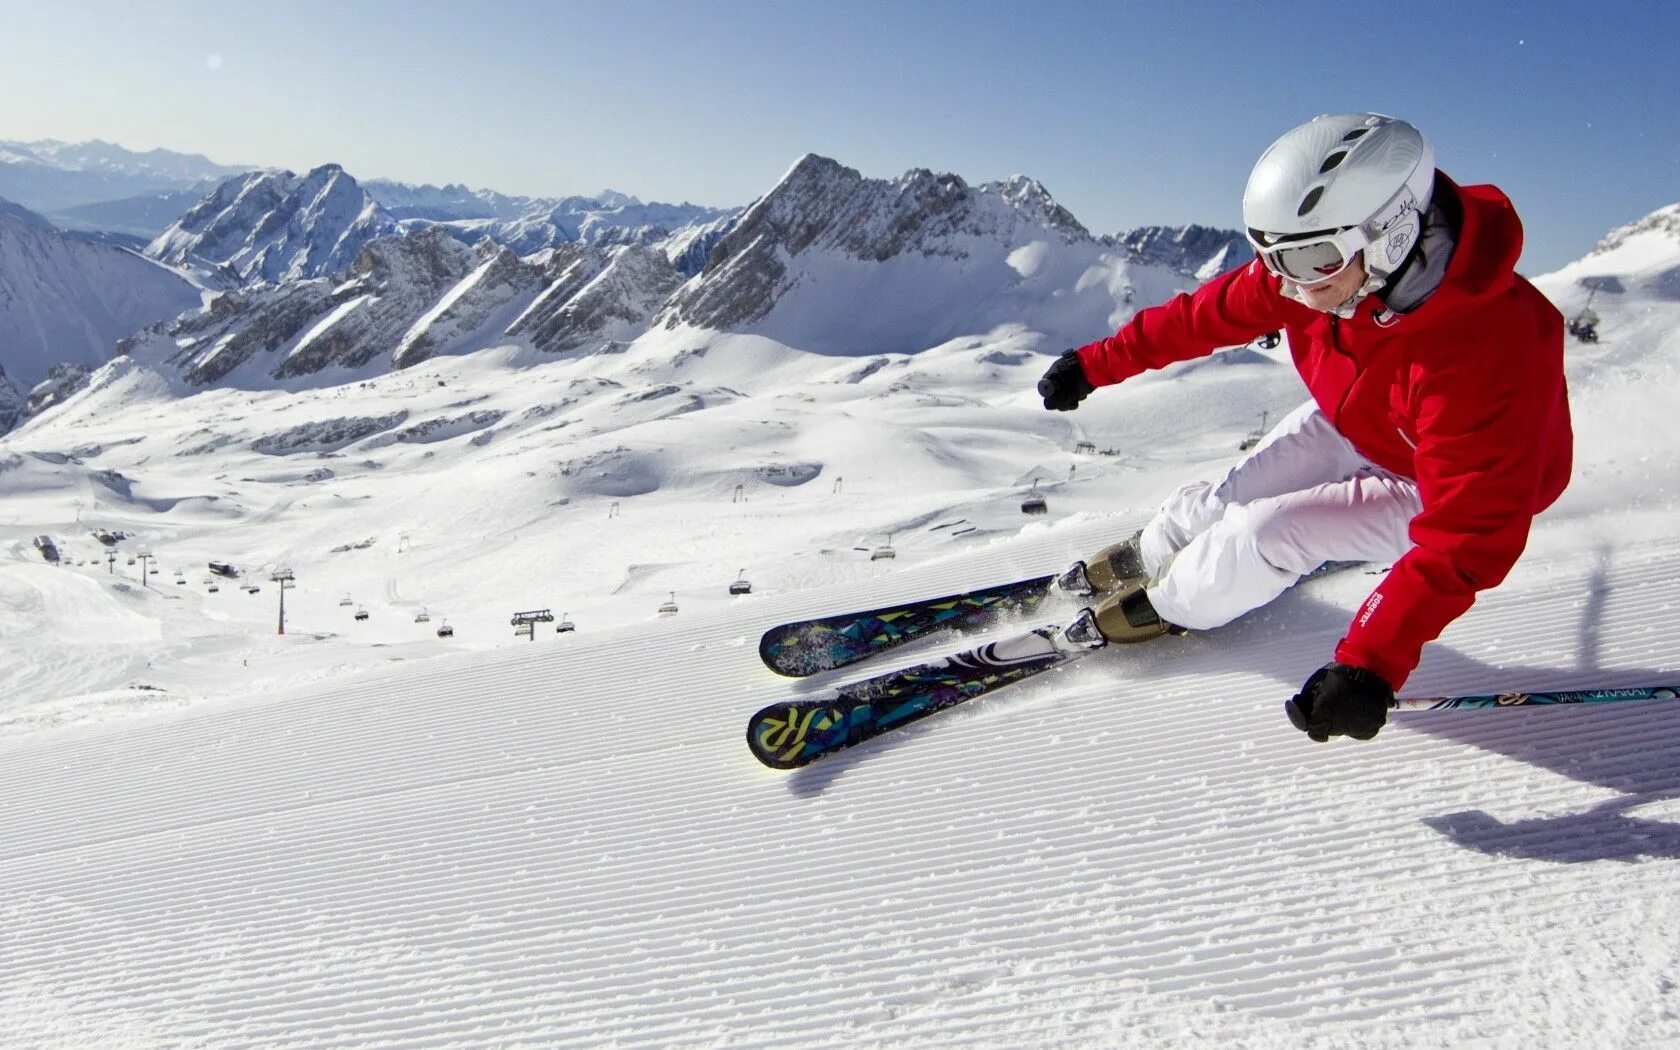 Горные лыжи к2 олмаунтин. Карвинговые горные лыжи. Катание на горных лыжах. Зимний спорт. Down skiing